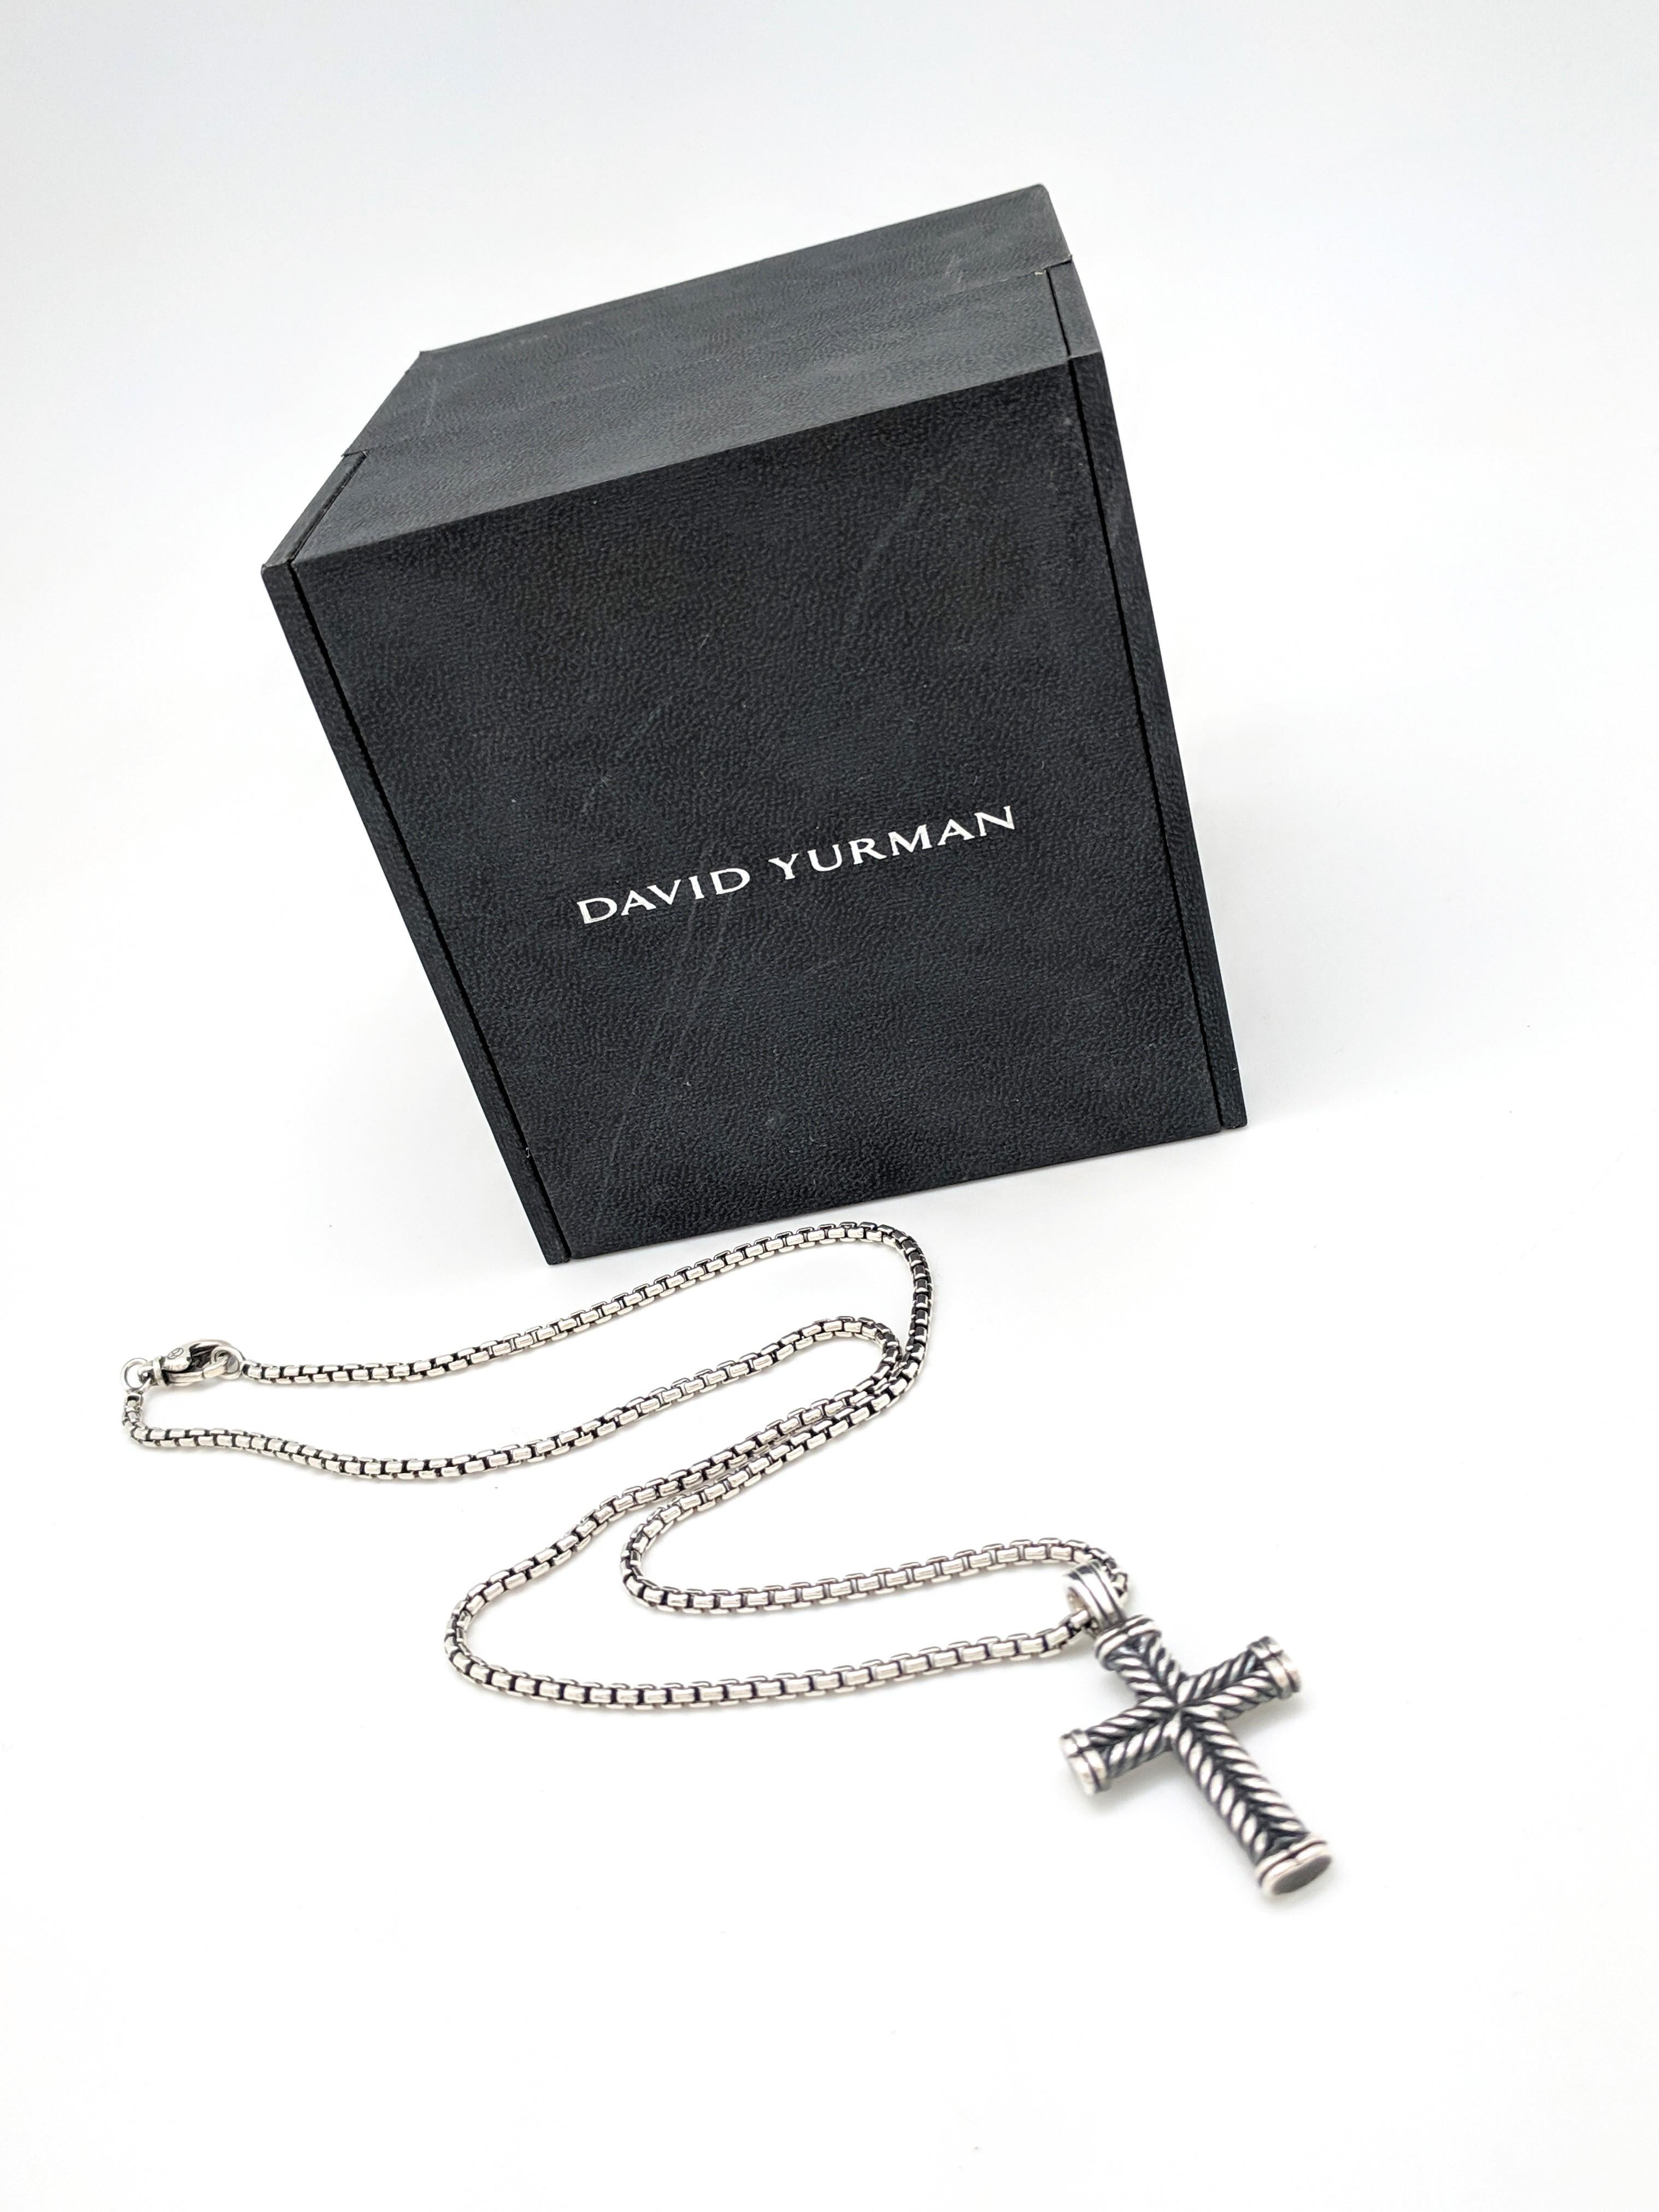 Contemporary Men's David Yurman Chevron Cross Pendant on Small Box Chain Necklace